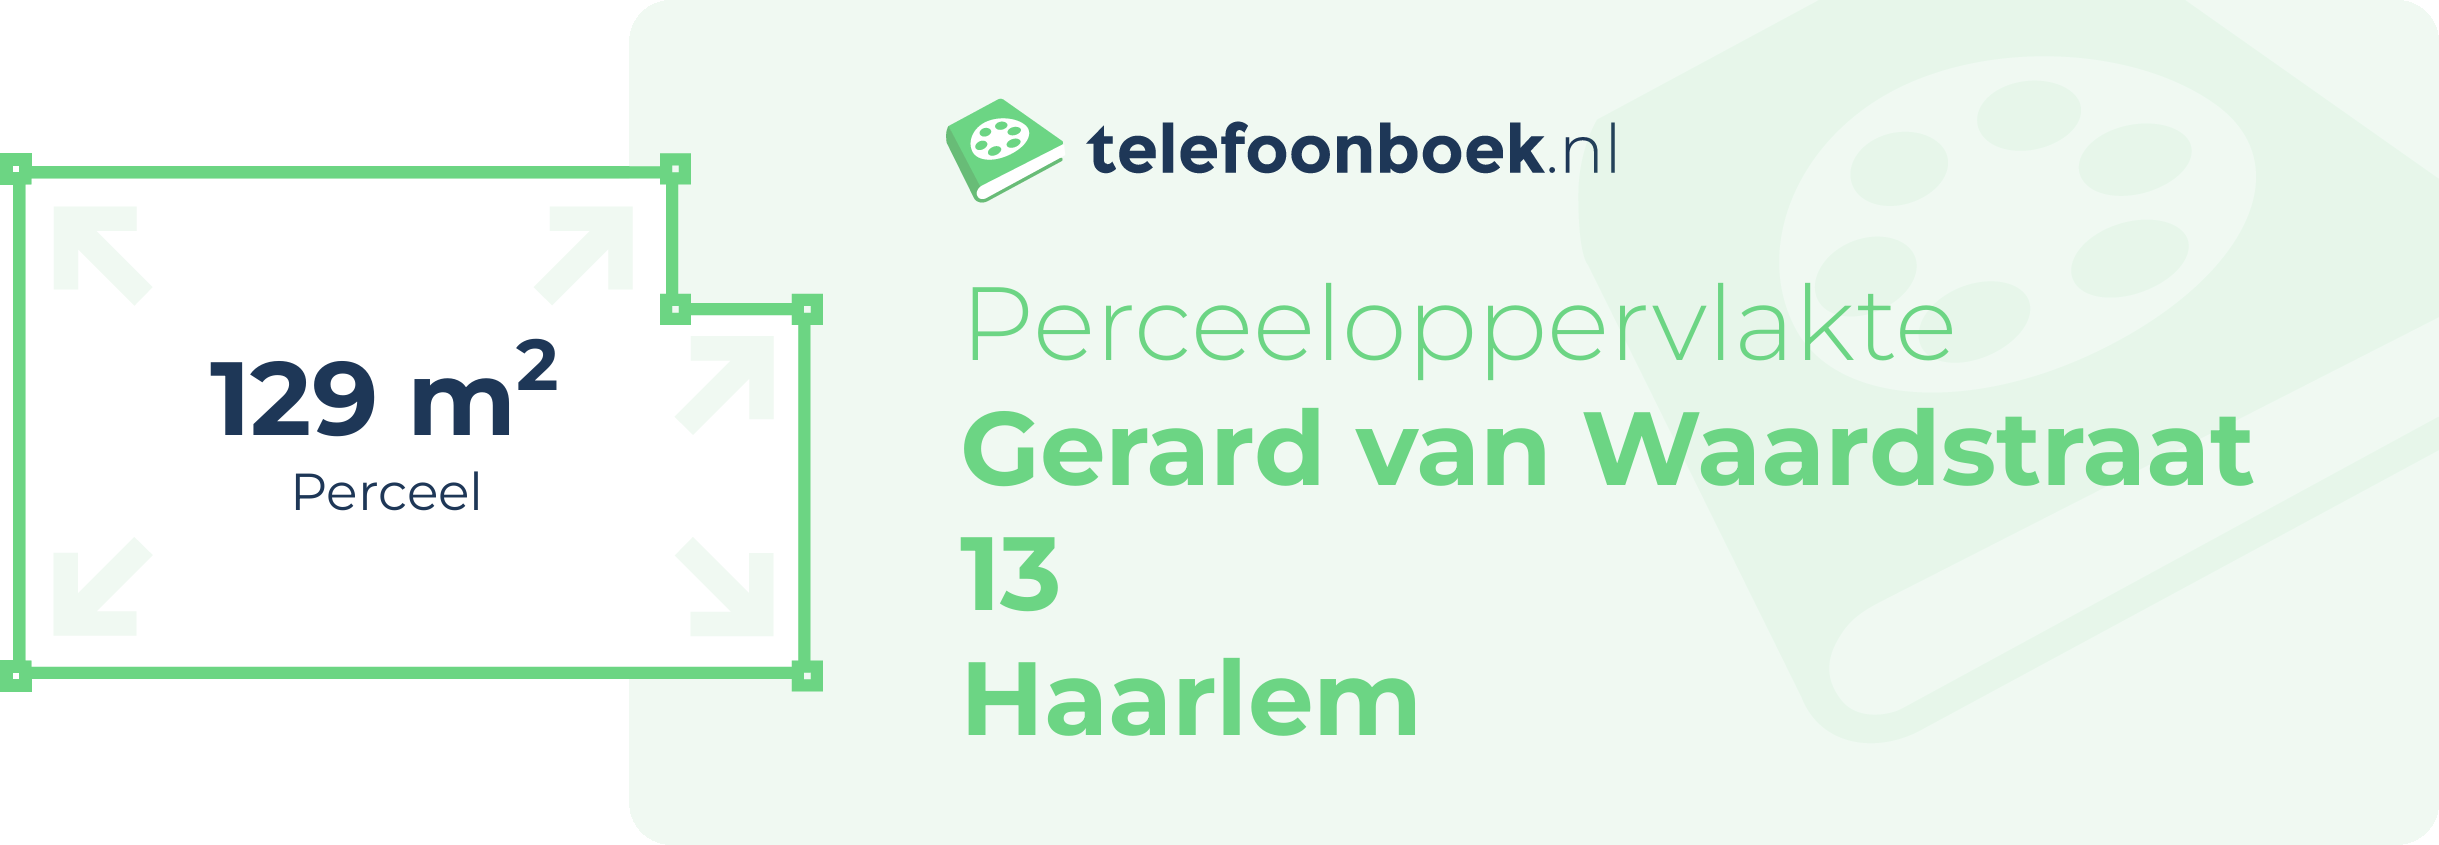 Perceeloppervlakte Gerard Van Waardstraat 13 Haarlem